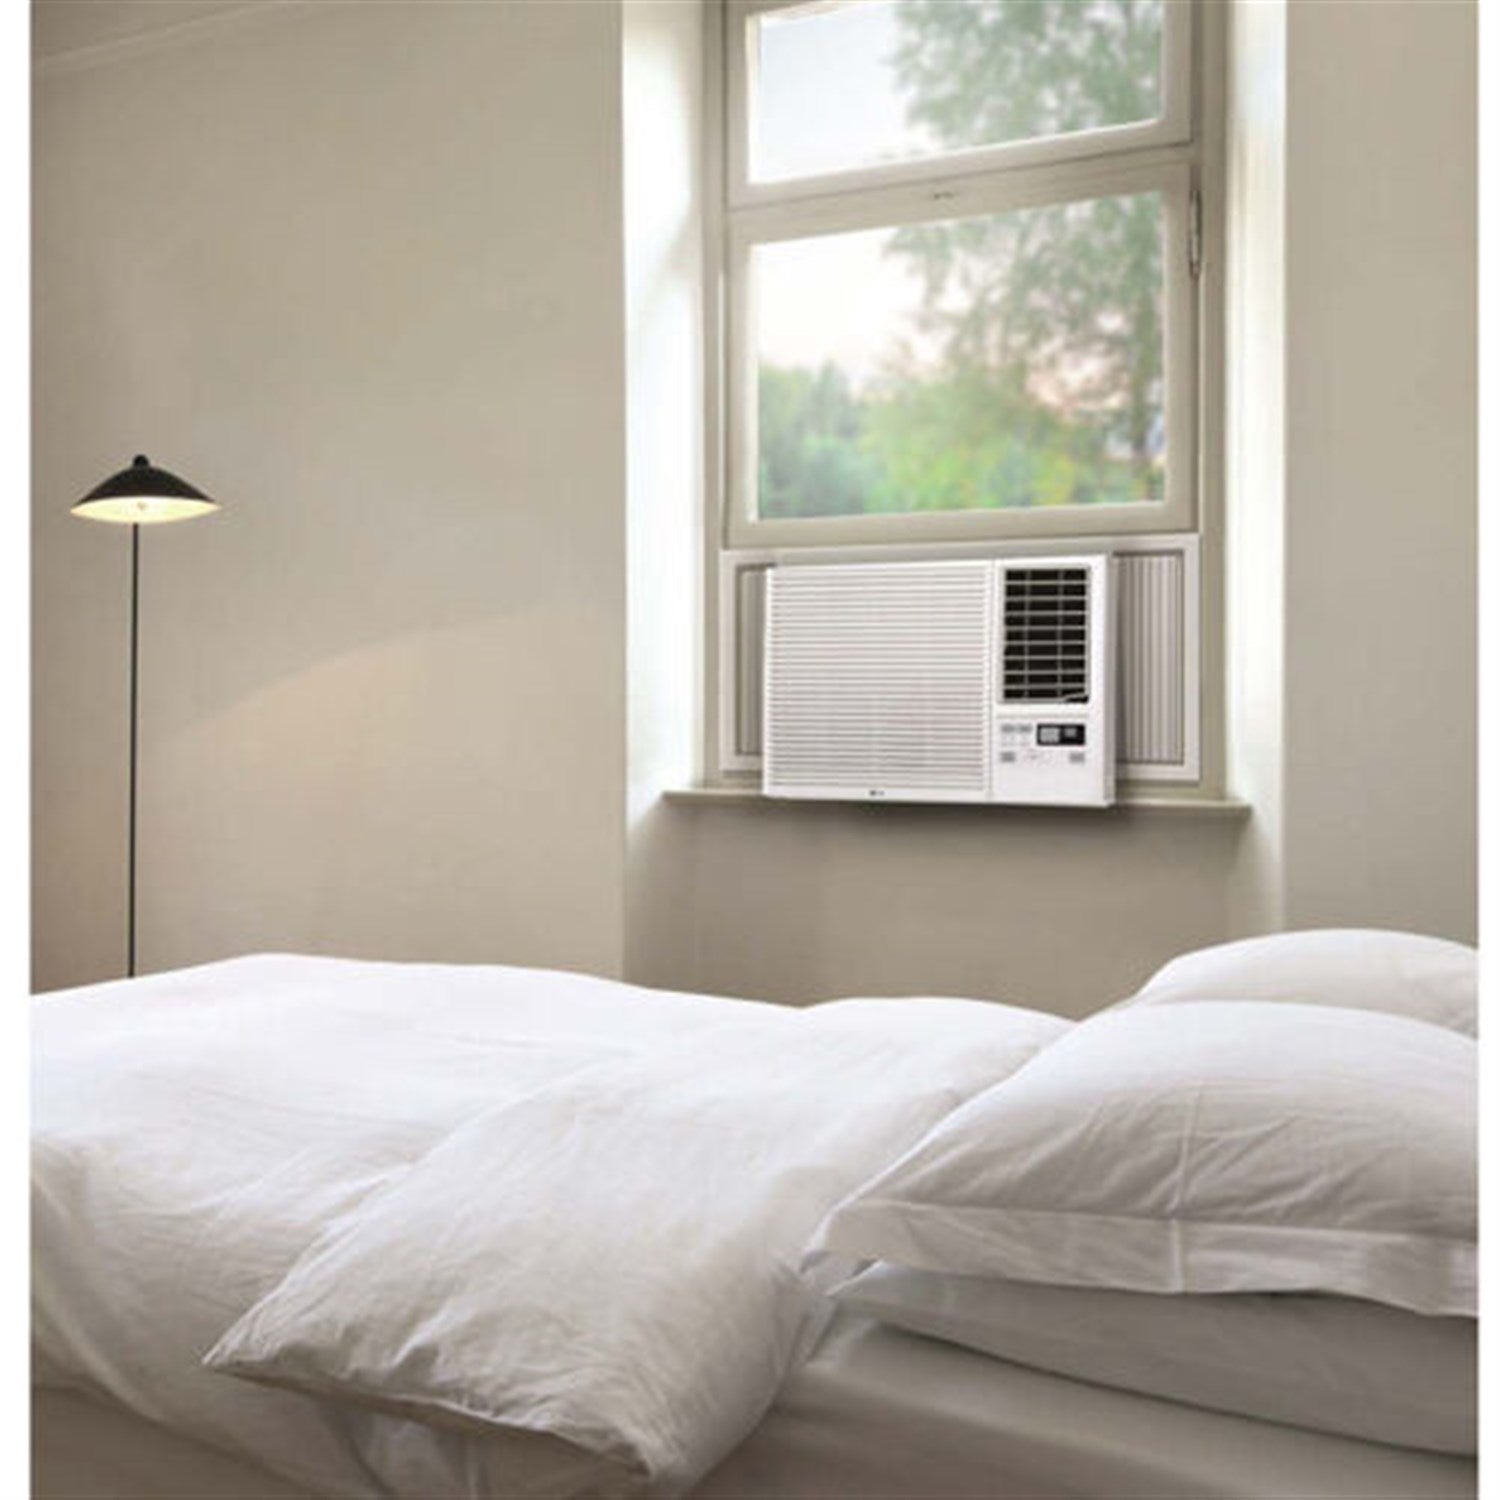 LG - 7,500 BTU Window Air Conditioner/Heater